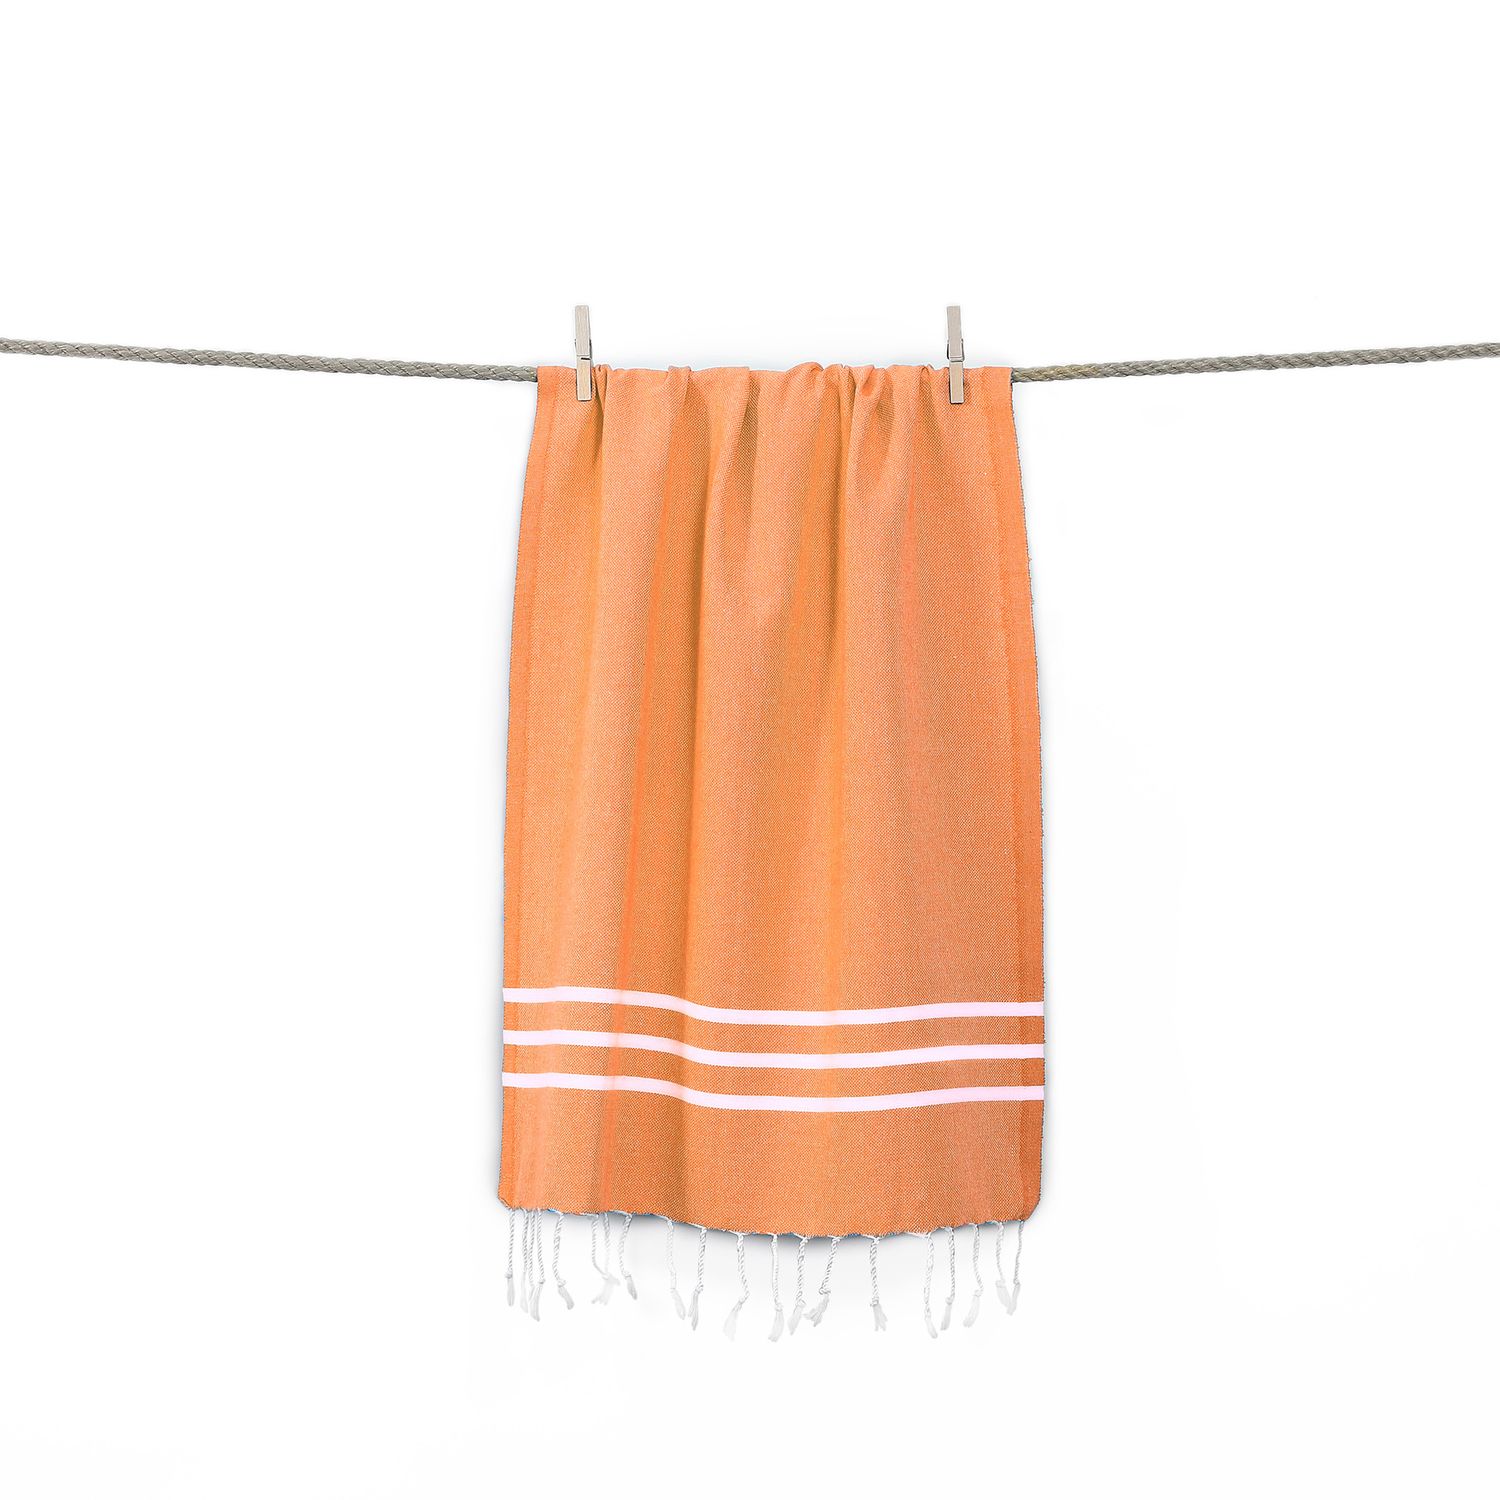 Linum Текстиль для дома Alara Pestemal Пляжное полотенце